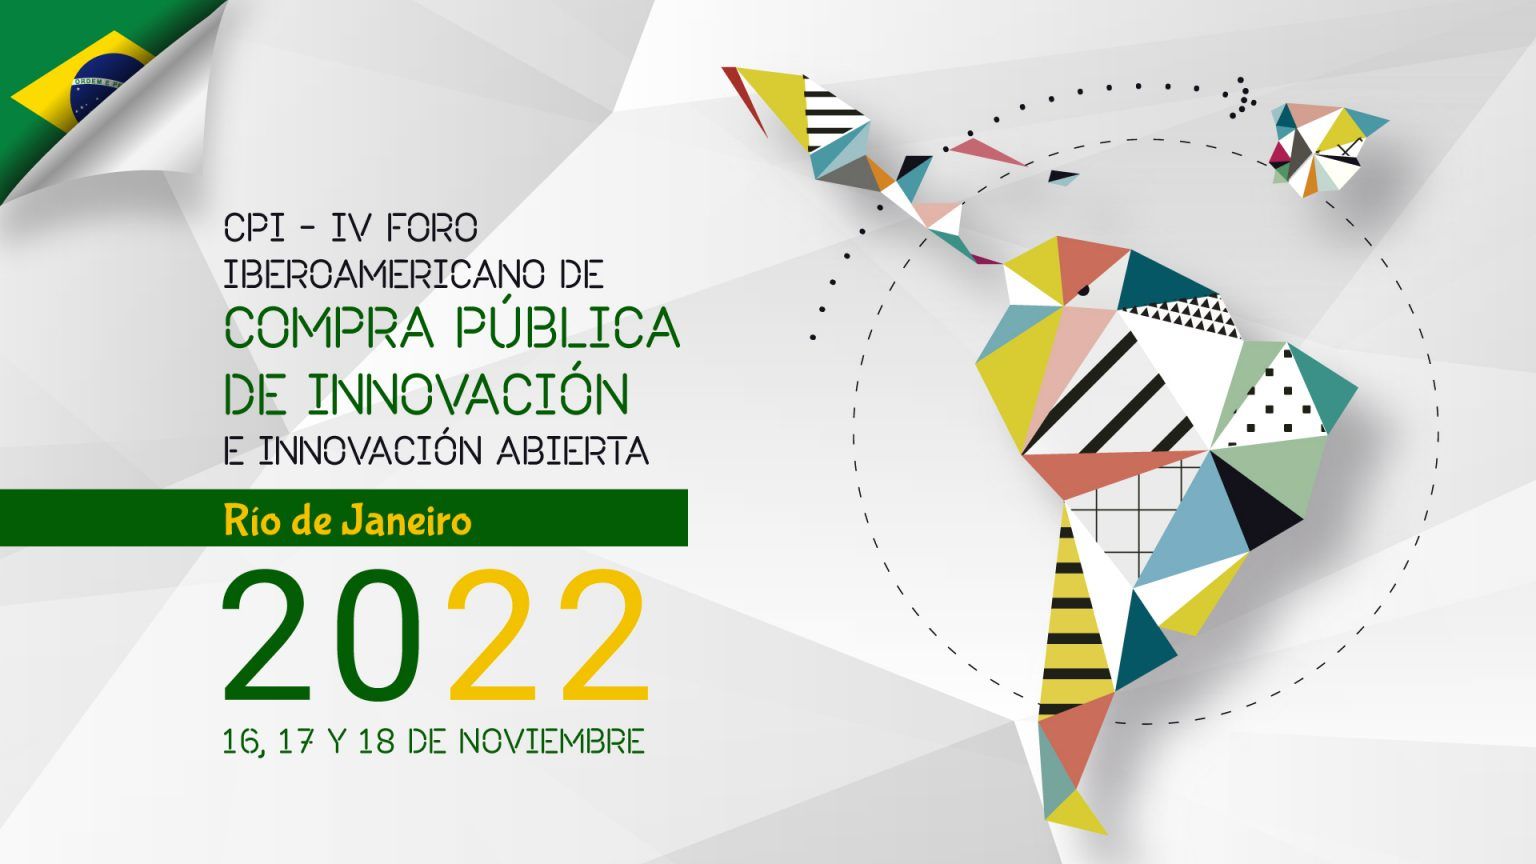 SAVE THE DATE - IV Foro Compra Pública de Innovación 2022. 16 – 18 Nov, Rio Janeiro.